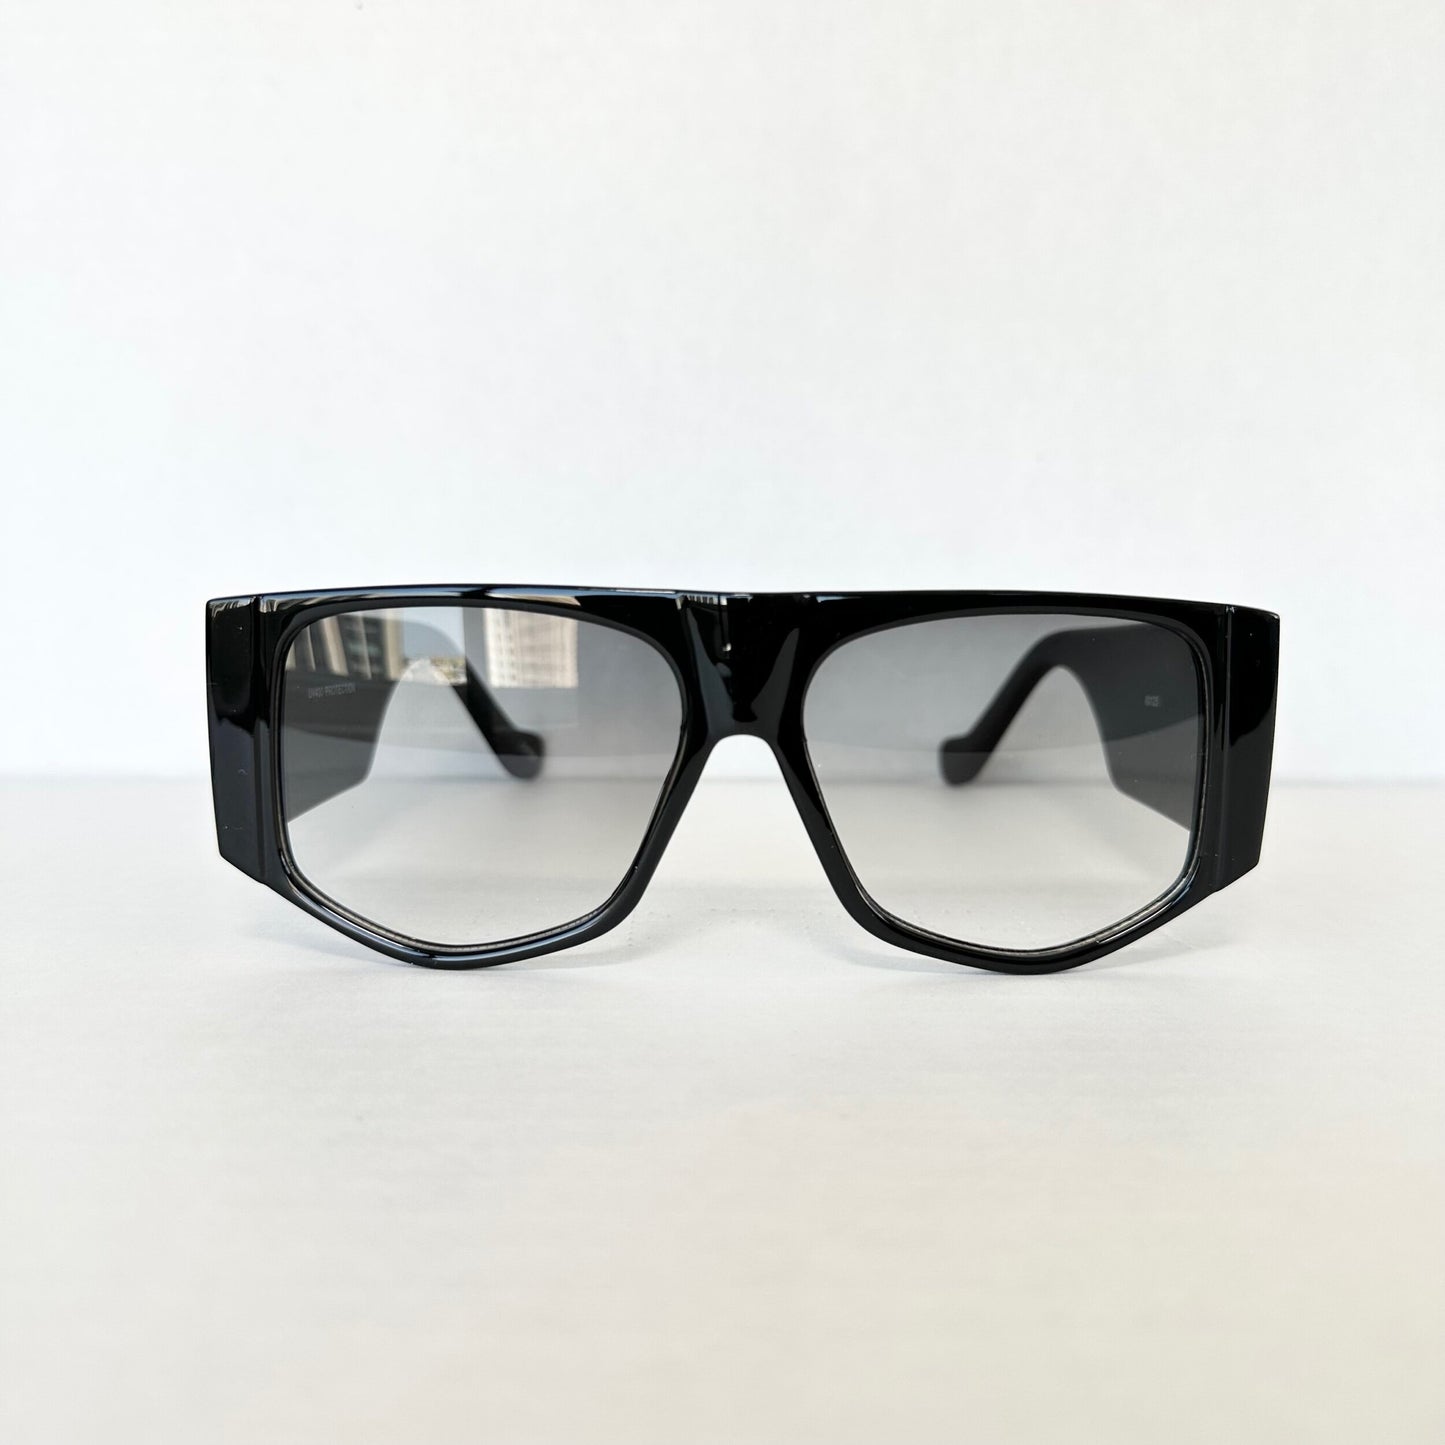 Sonoran Shield Sunglasses